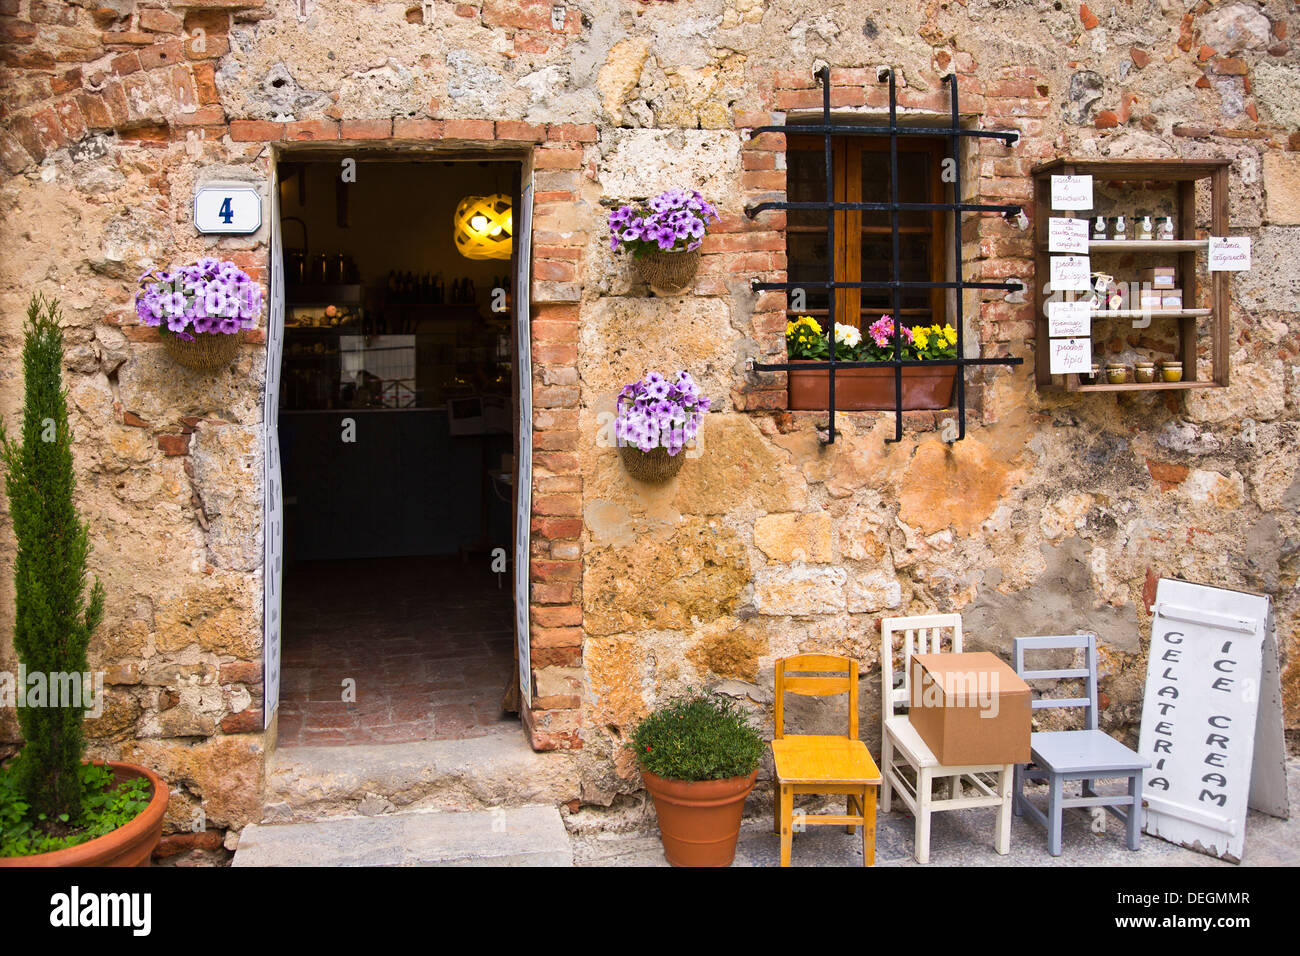 Façade d'une boutique de vins, Monteriggioni, Province de Sienne, Toscane, Italie Banque D'Images